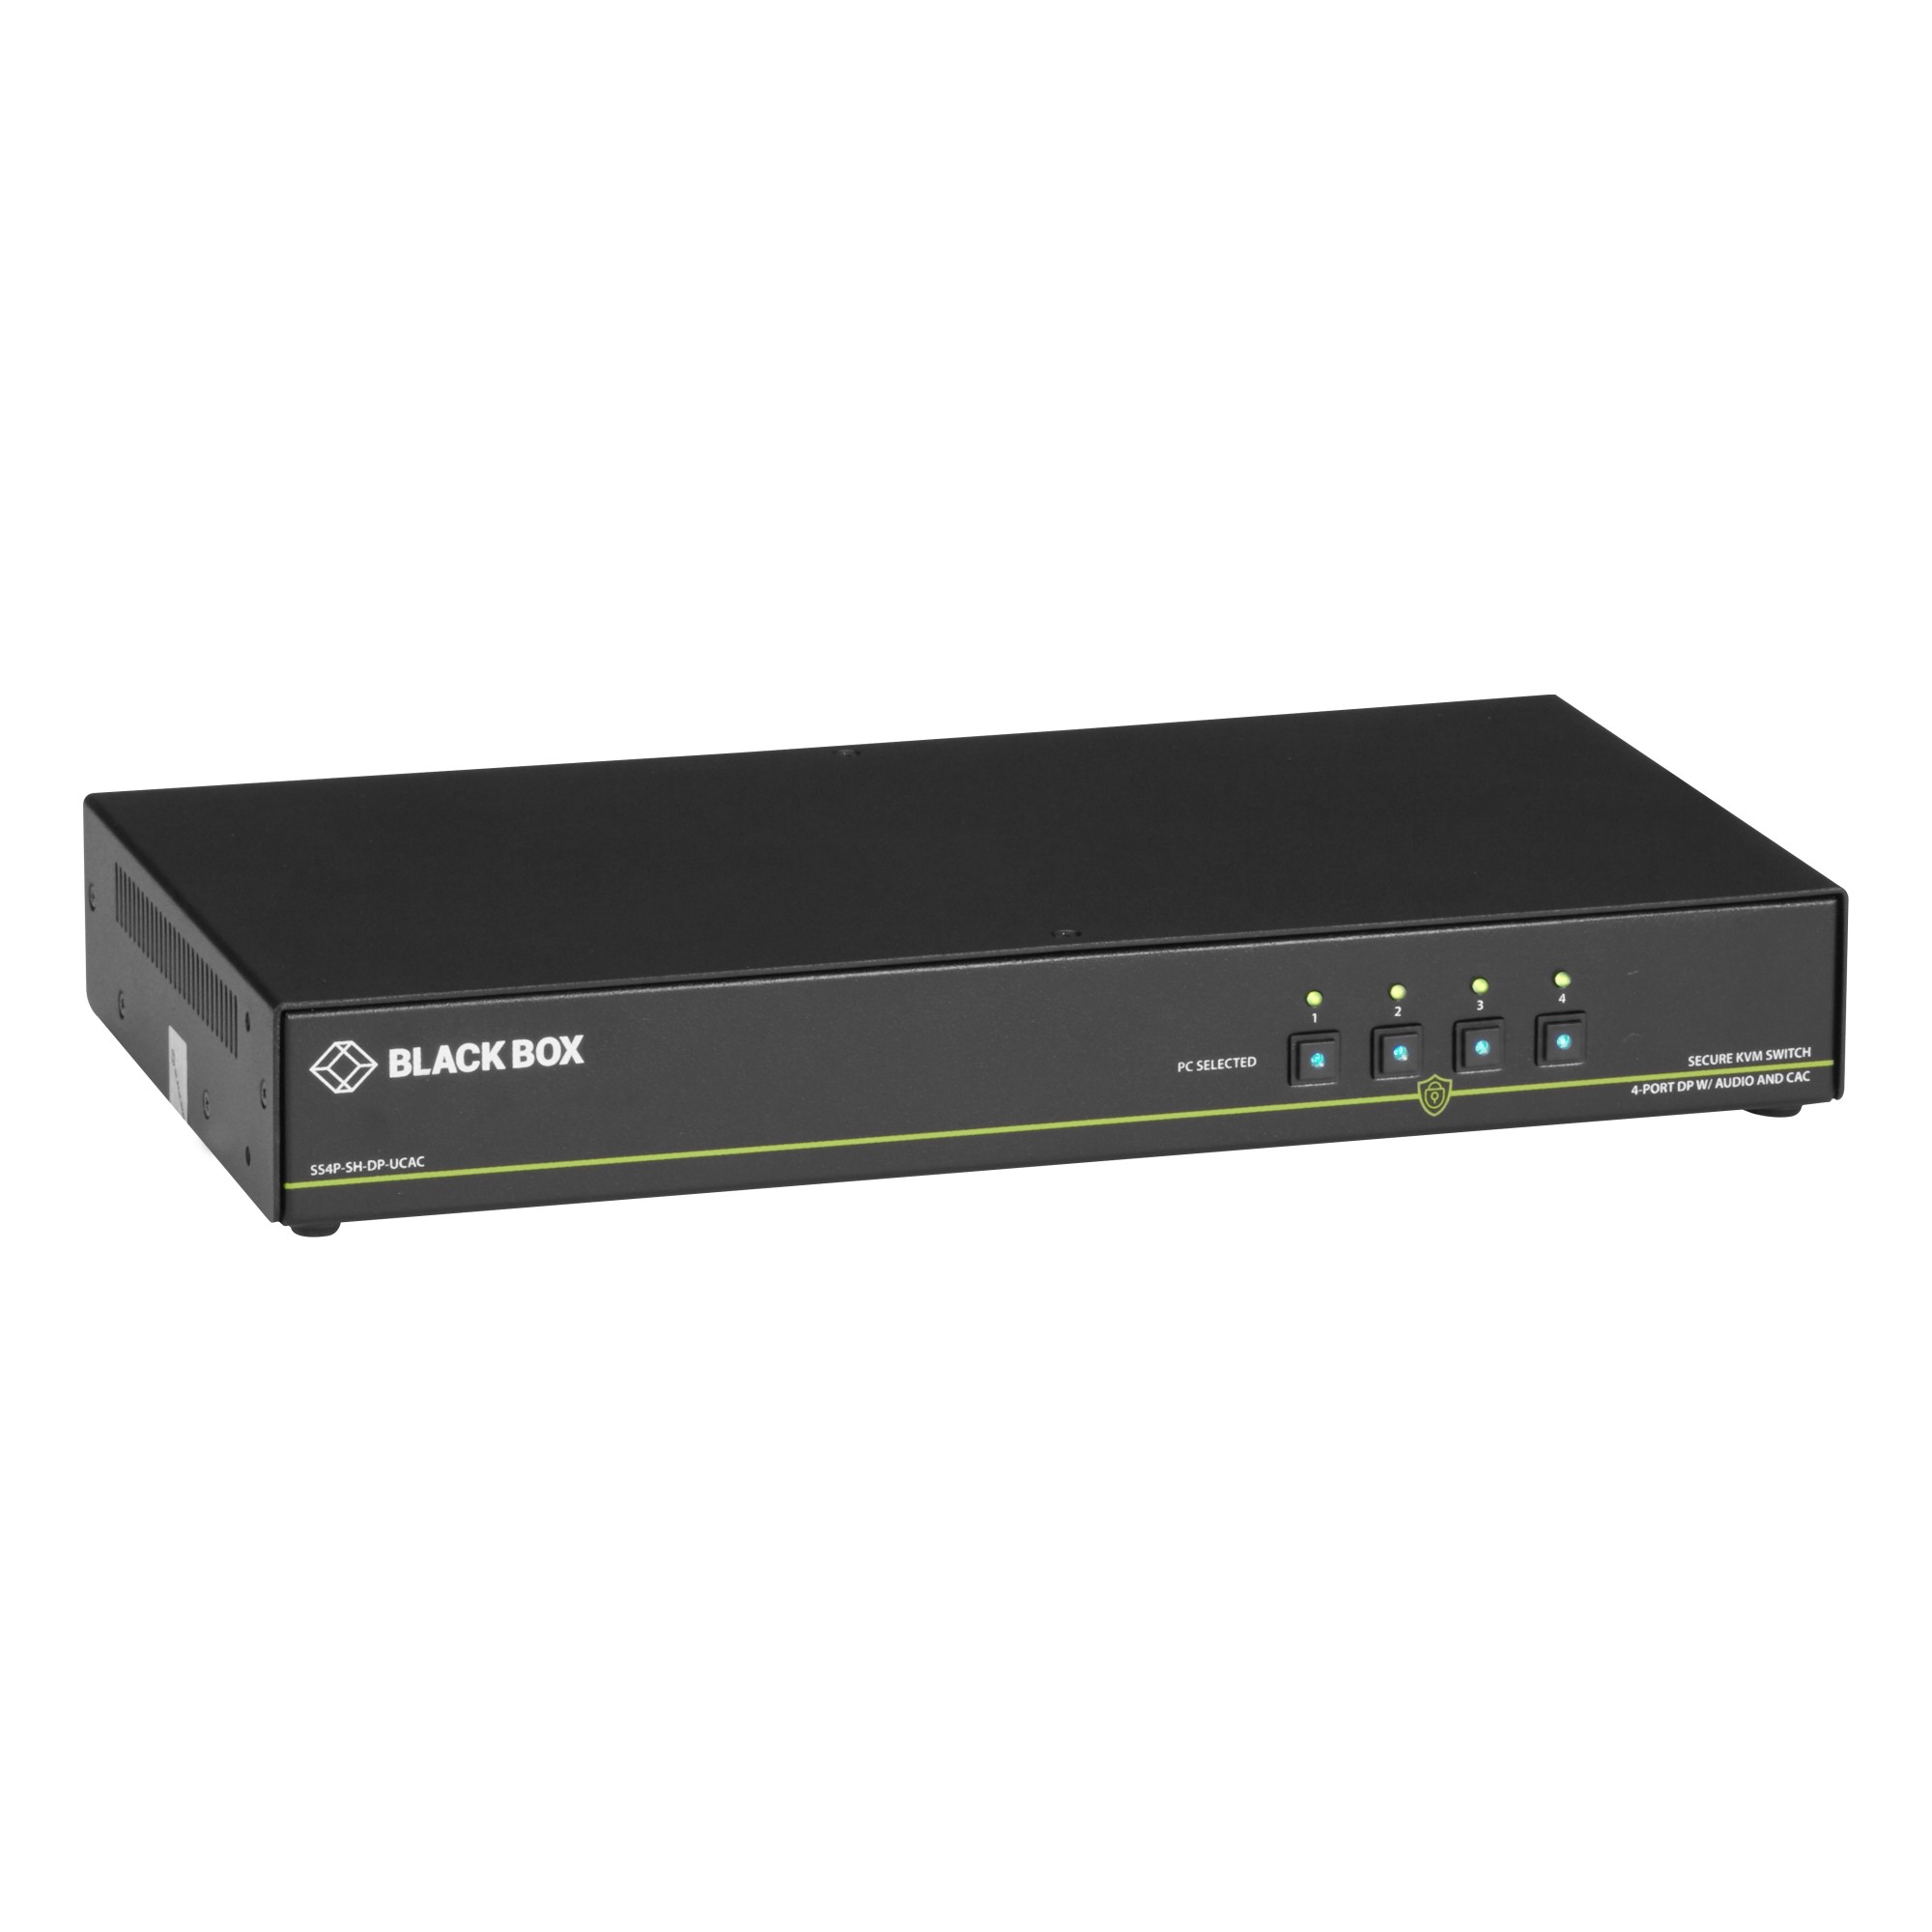 SS4P-SH-DVI-UCAC BLACK BOX SECURE KVM SWITCH, NIAP 3.0 CERTIFIED, 4 PORT, SINGLE-MONITOR, DVI-I, PS2, USB,